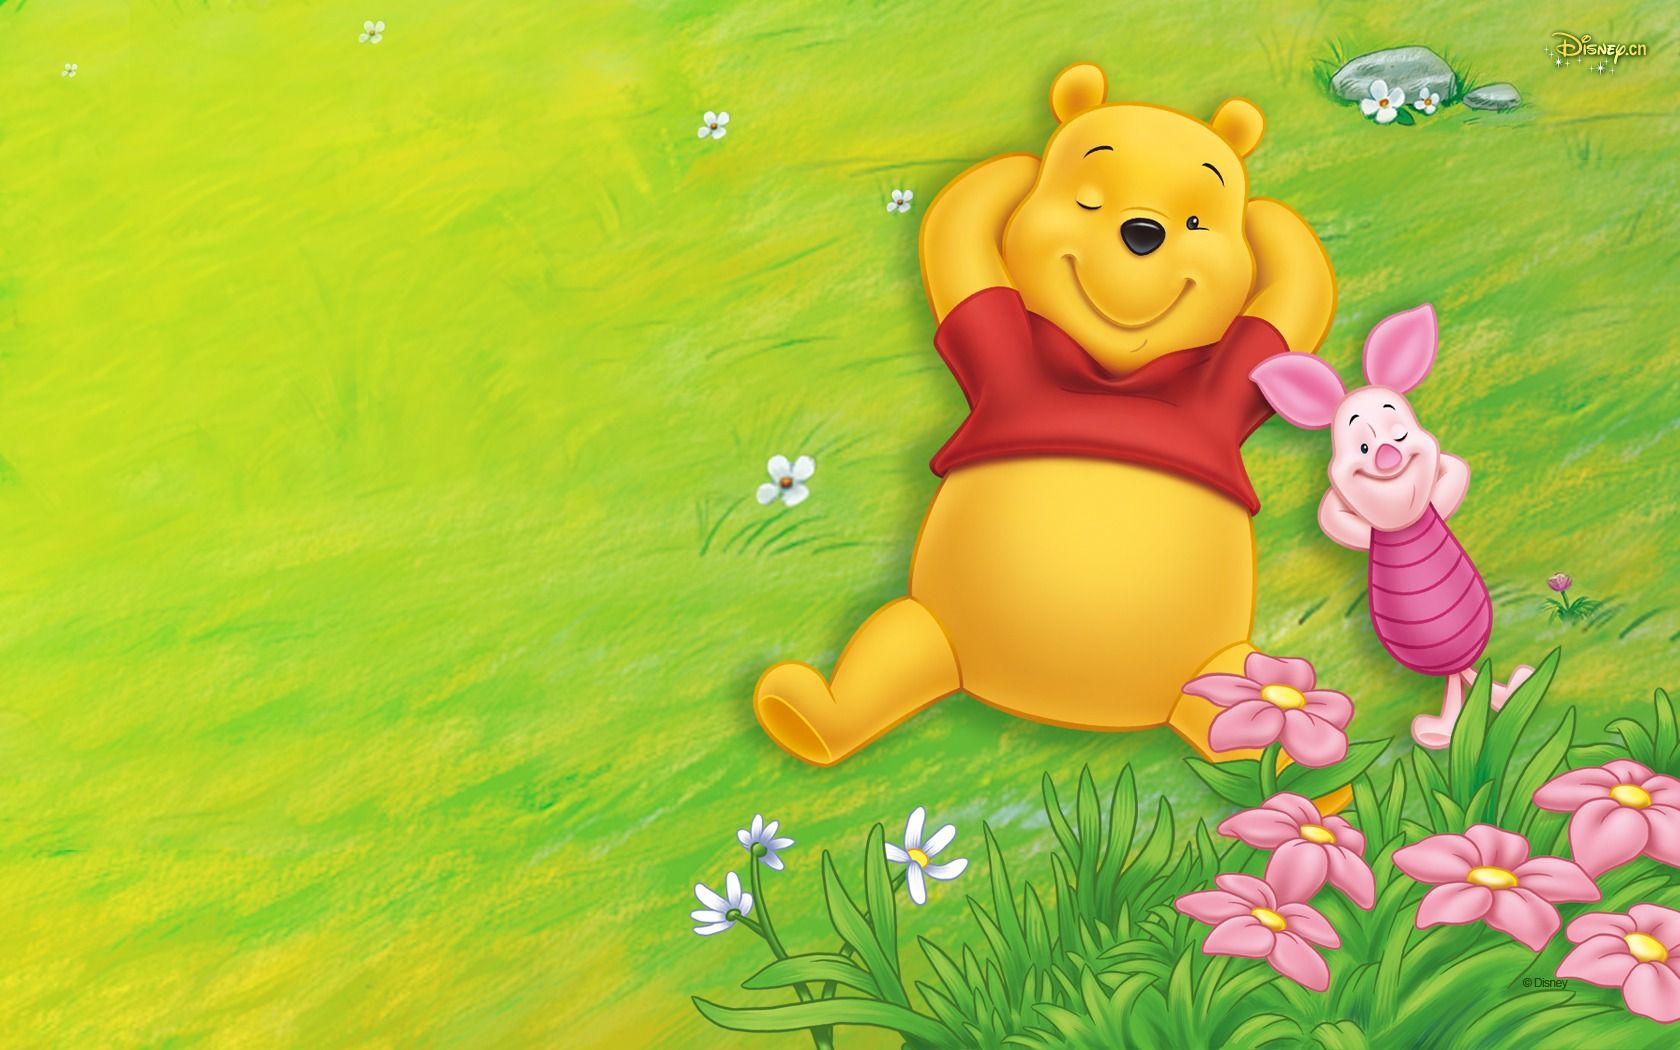 Free download Walt Disney cartoon Winnie the Pooh wallpaper 2 8